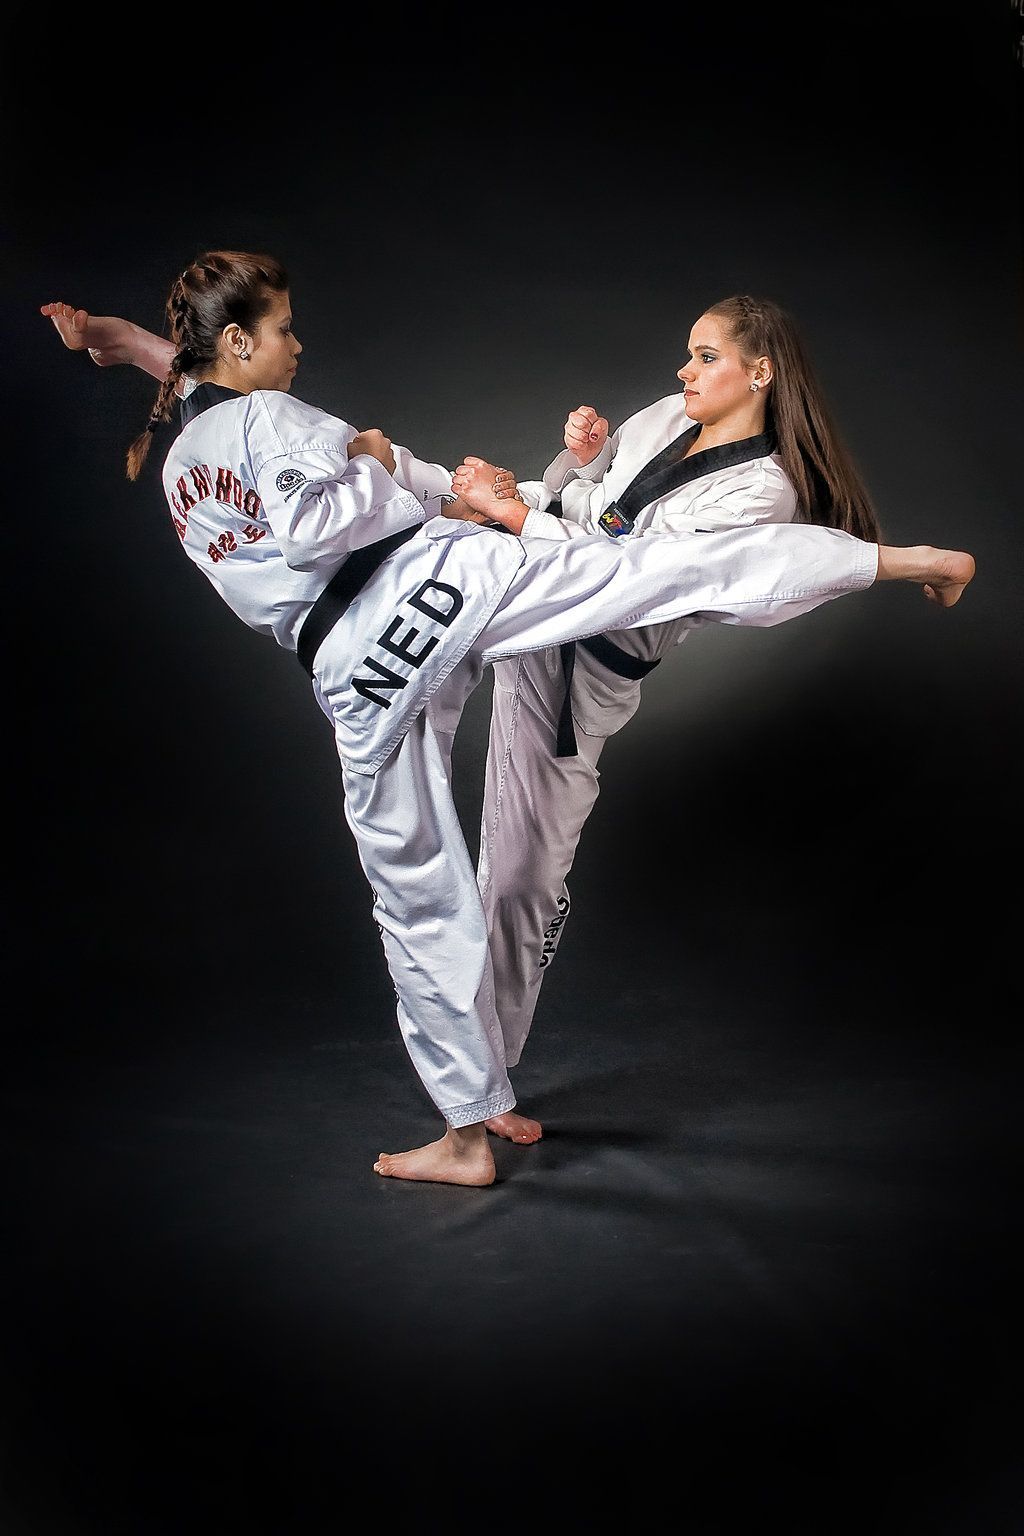 Taekwondo Wallpaper 1920x1080 66889 - Baltana